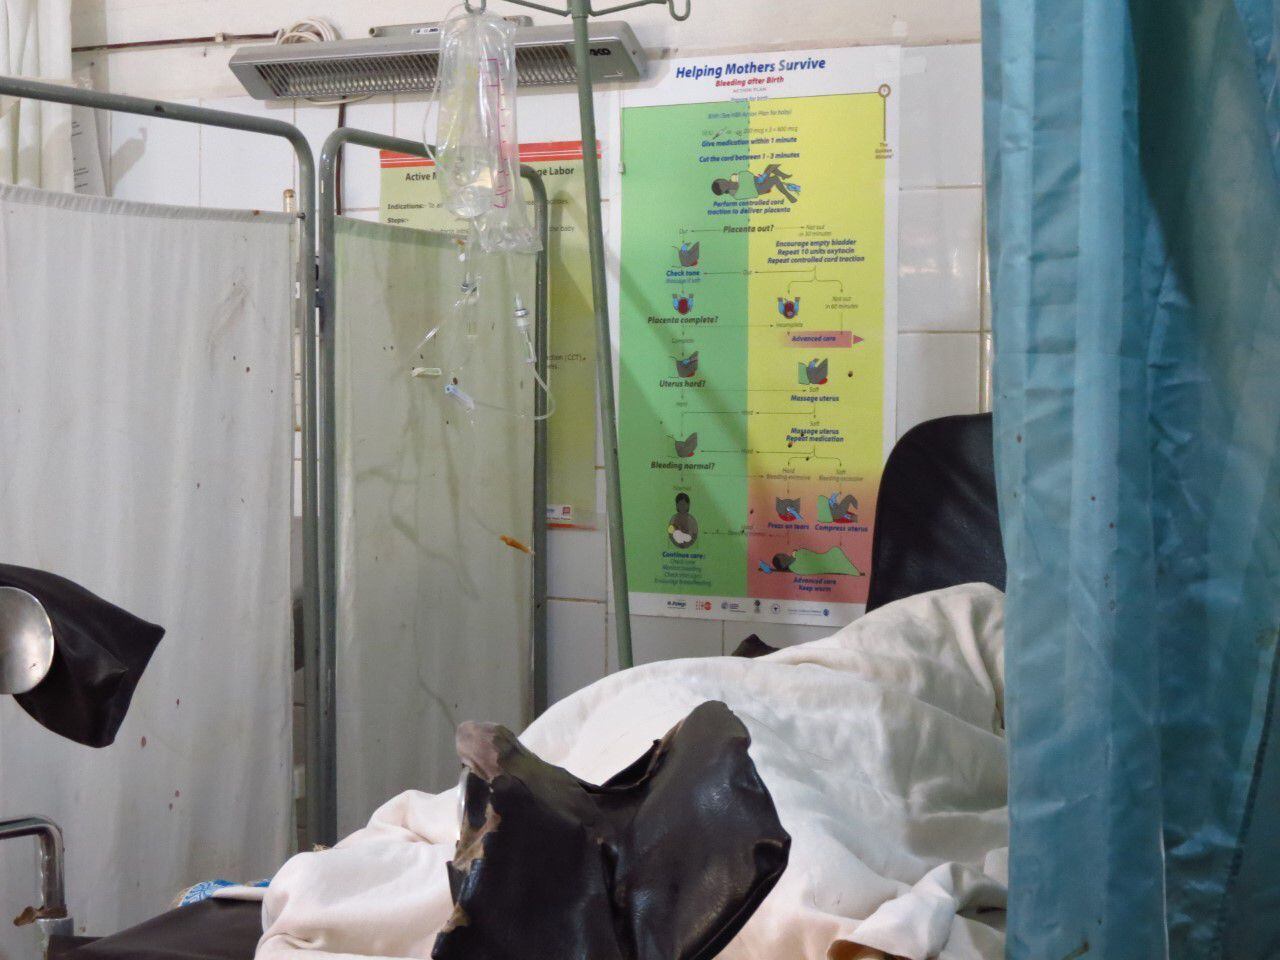 Una mujer descansa después de dar a luz en la cama de partos del hospital rural de Gambo. En la pared observamos el algoritmo de manejo de la hemorragia posparto del curso realizado a las matronas del centro para disminuir la principal causa de muerte materna en la región.